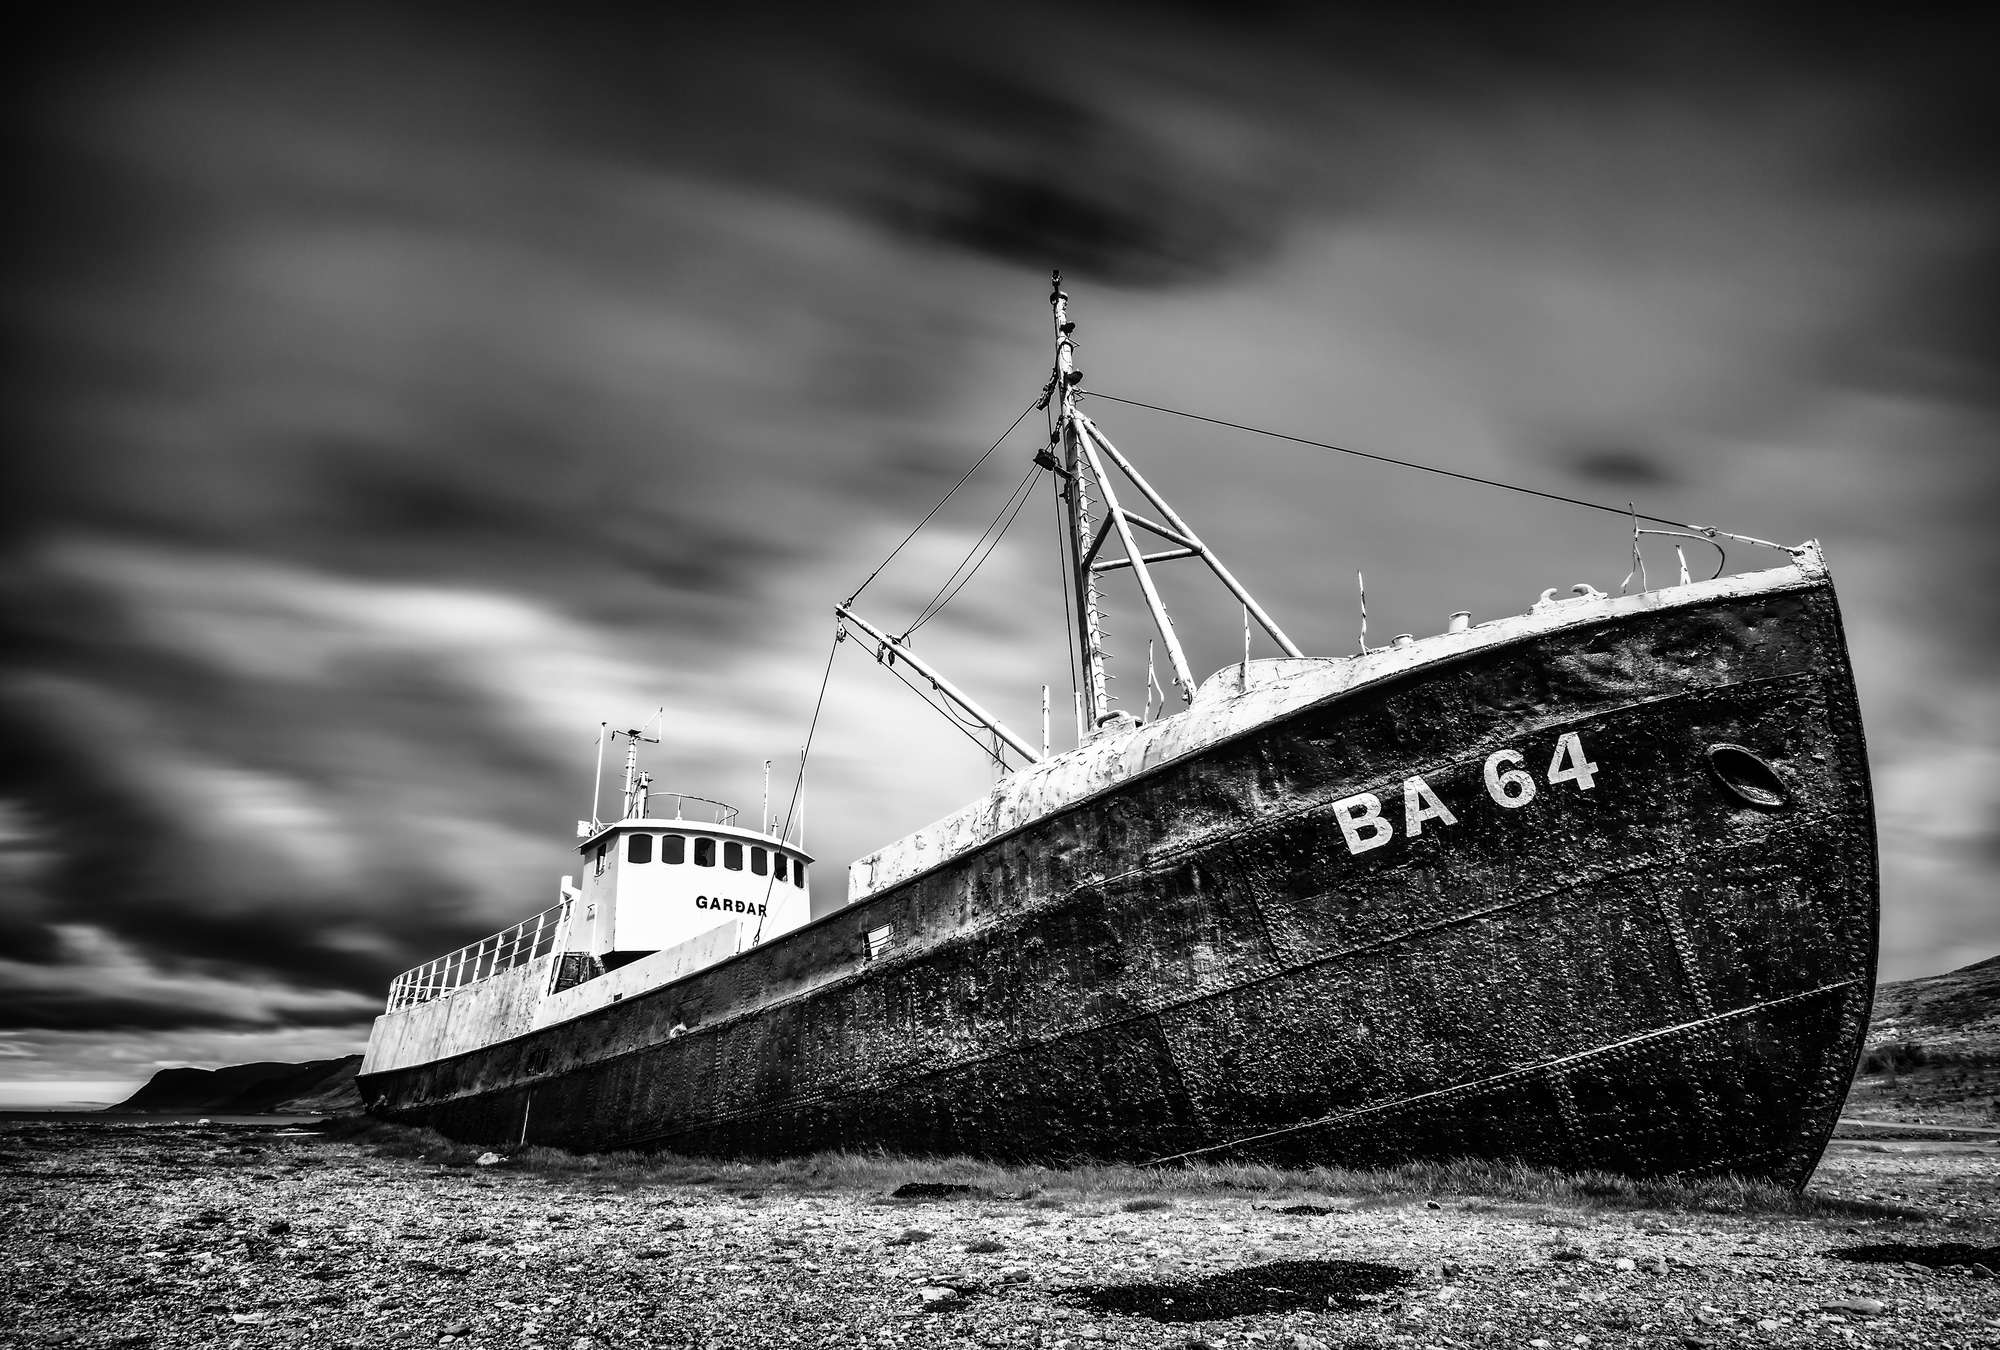             Fototapete gestrandetes Schiffswrack – Schwarz-Weiß
        